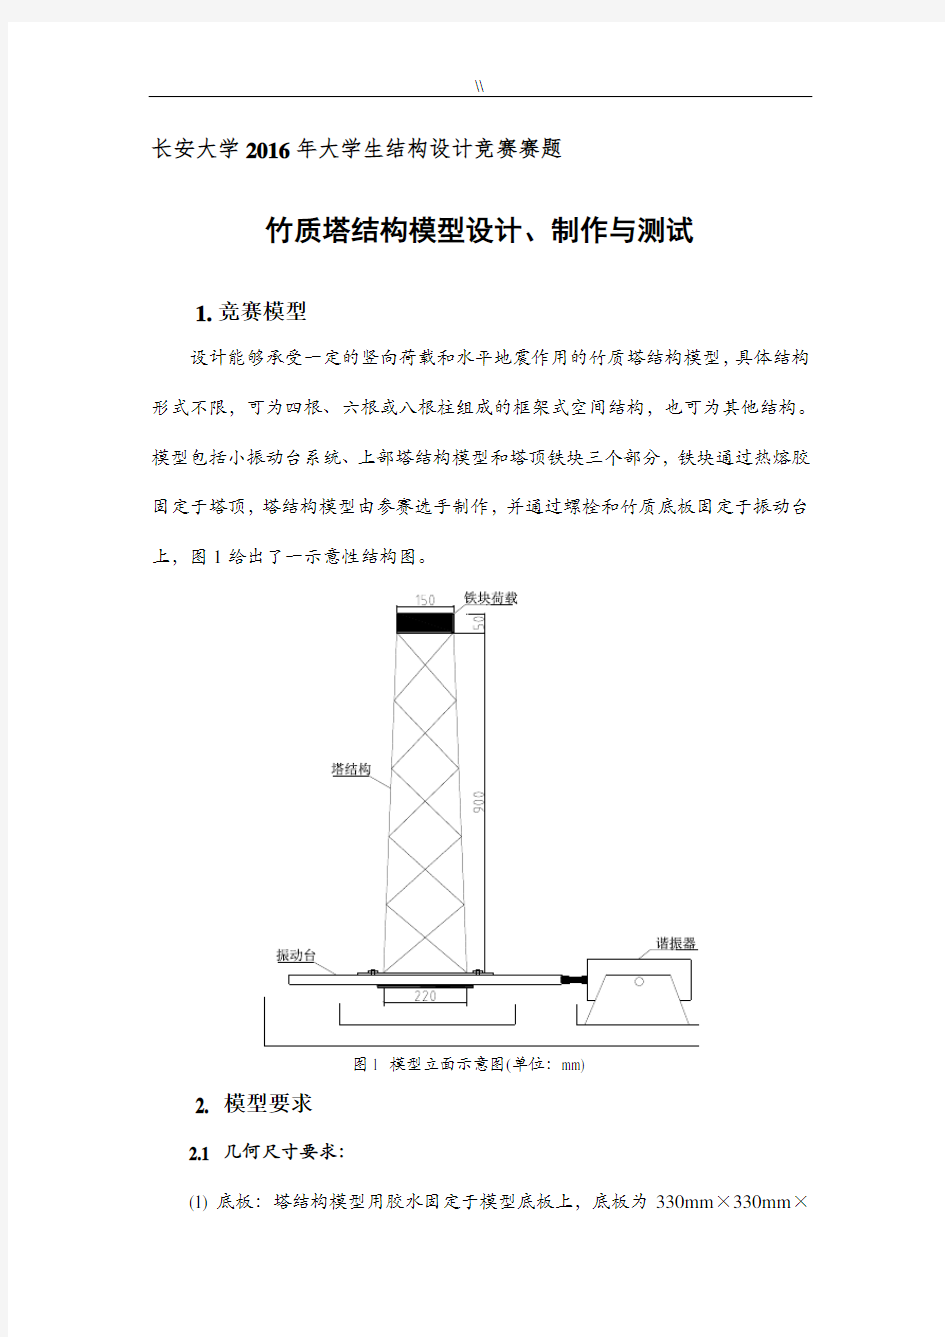 长安大学2016年度结构设计大赛赛题-竹质塔结构